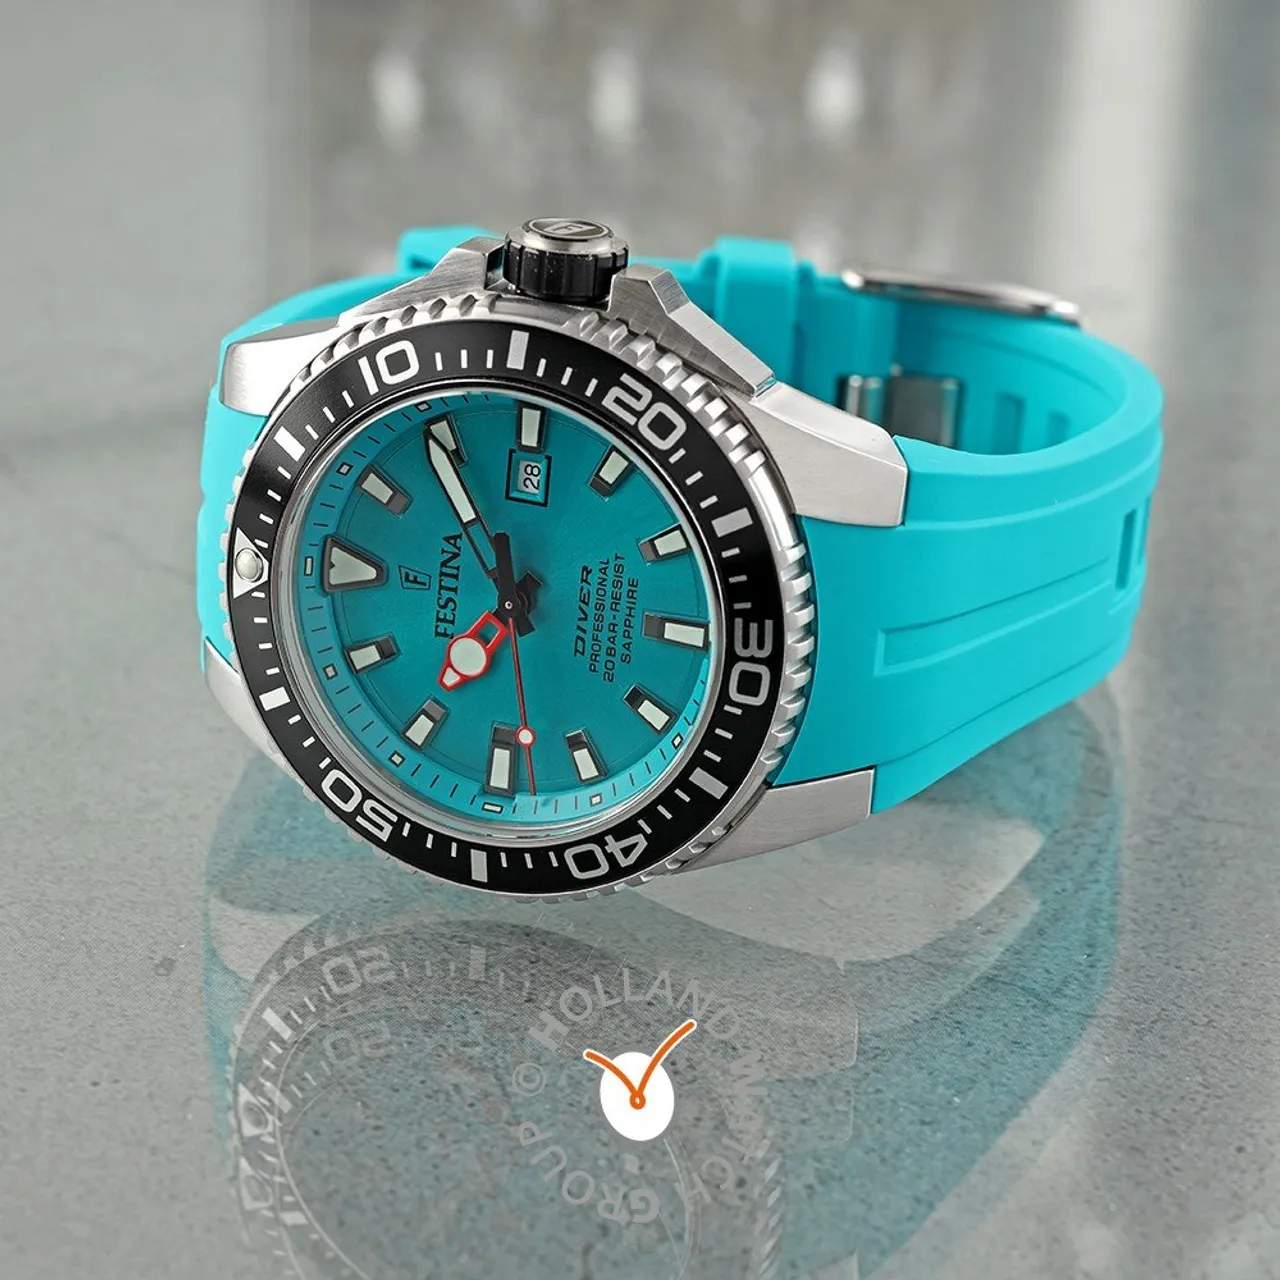 Festina F20664/5 Diver Horloge